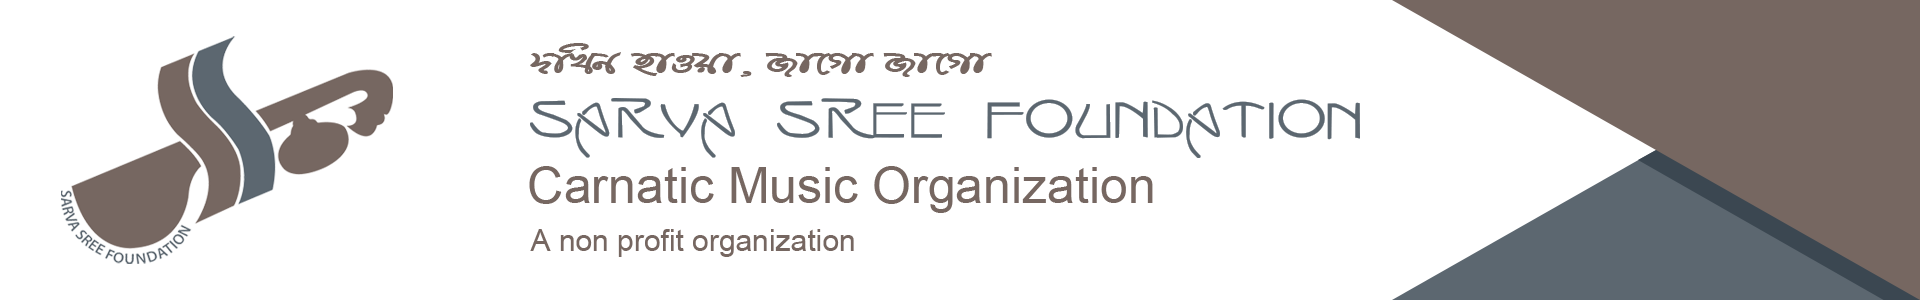 Web Banner for Sarva Sree Foundation